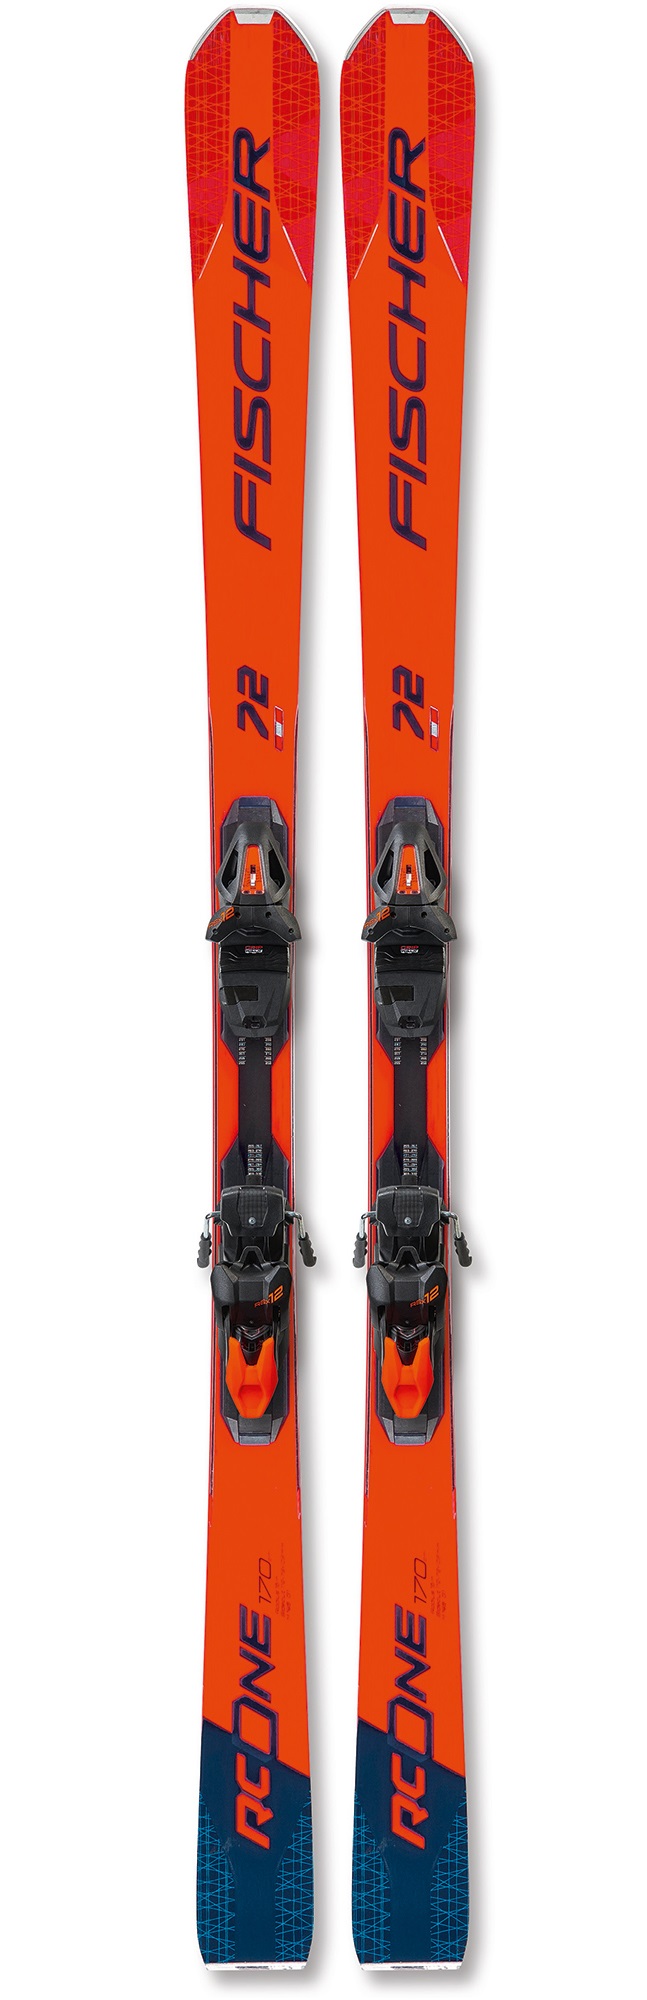 Горные лыжи Fischer RC One 72 MF + RSX Z12 PR 2020 blue/red, 182 см